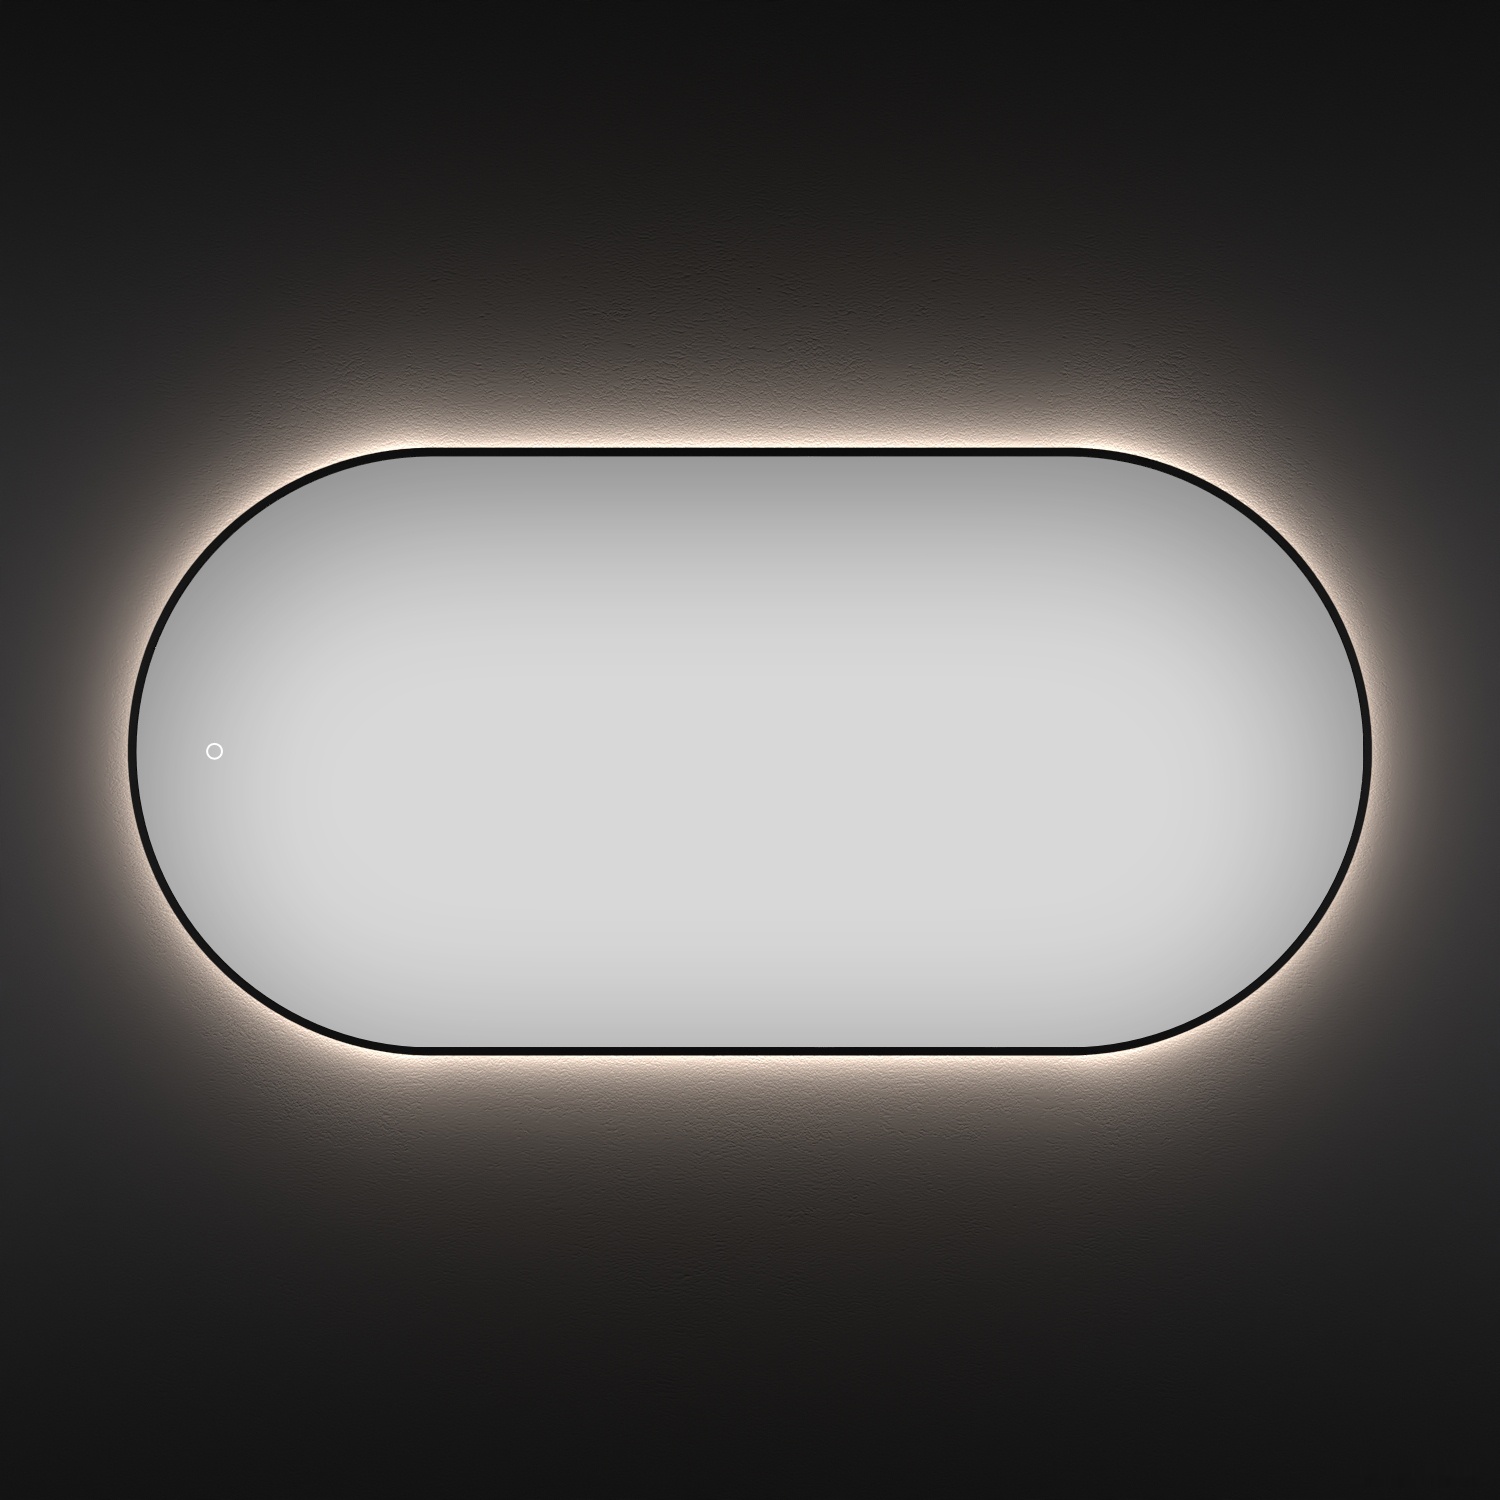 зеркало wellsee зеркало с фоновой led-подсветкой 7 rays' spectrum 172201960, 120 x 60 см (с сенсором и регулировкой яркости освещения)